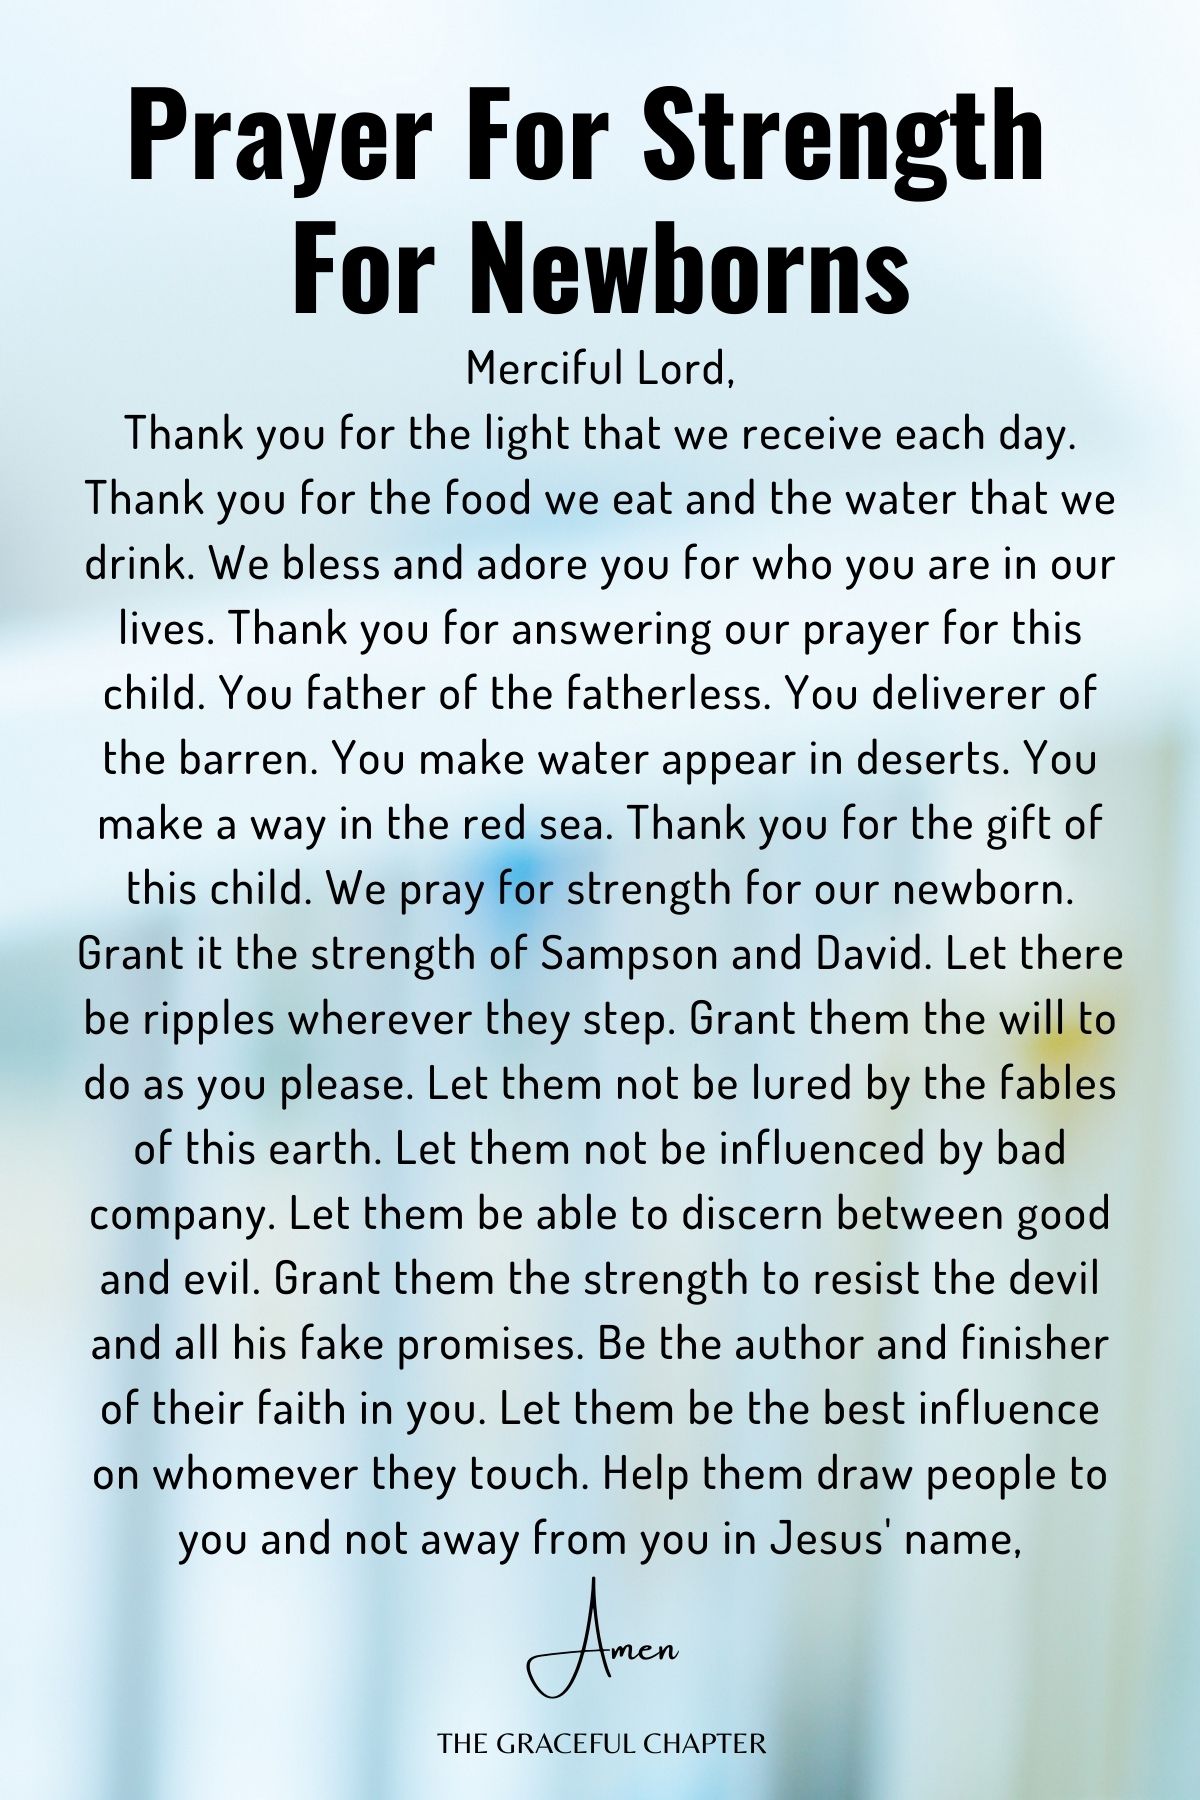 Prayer for strength for newborns